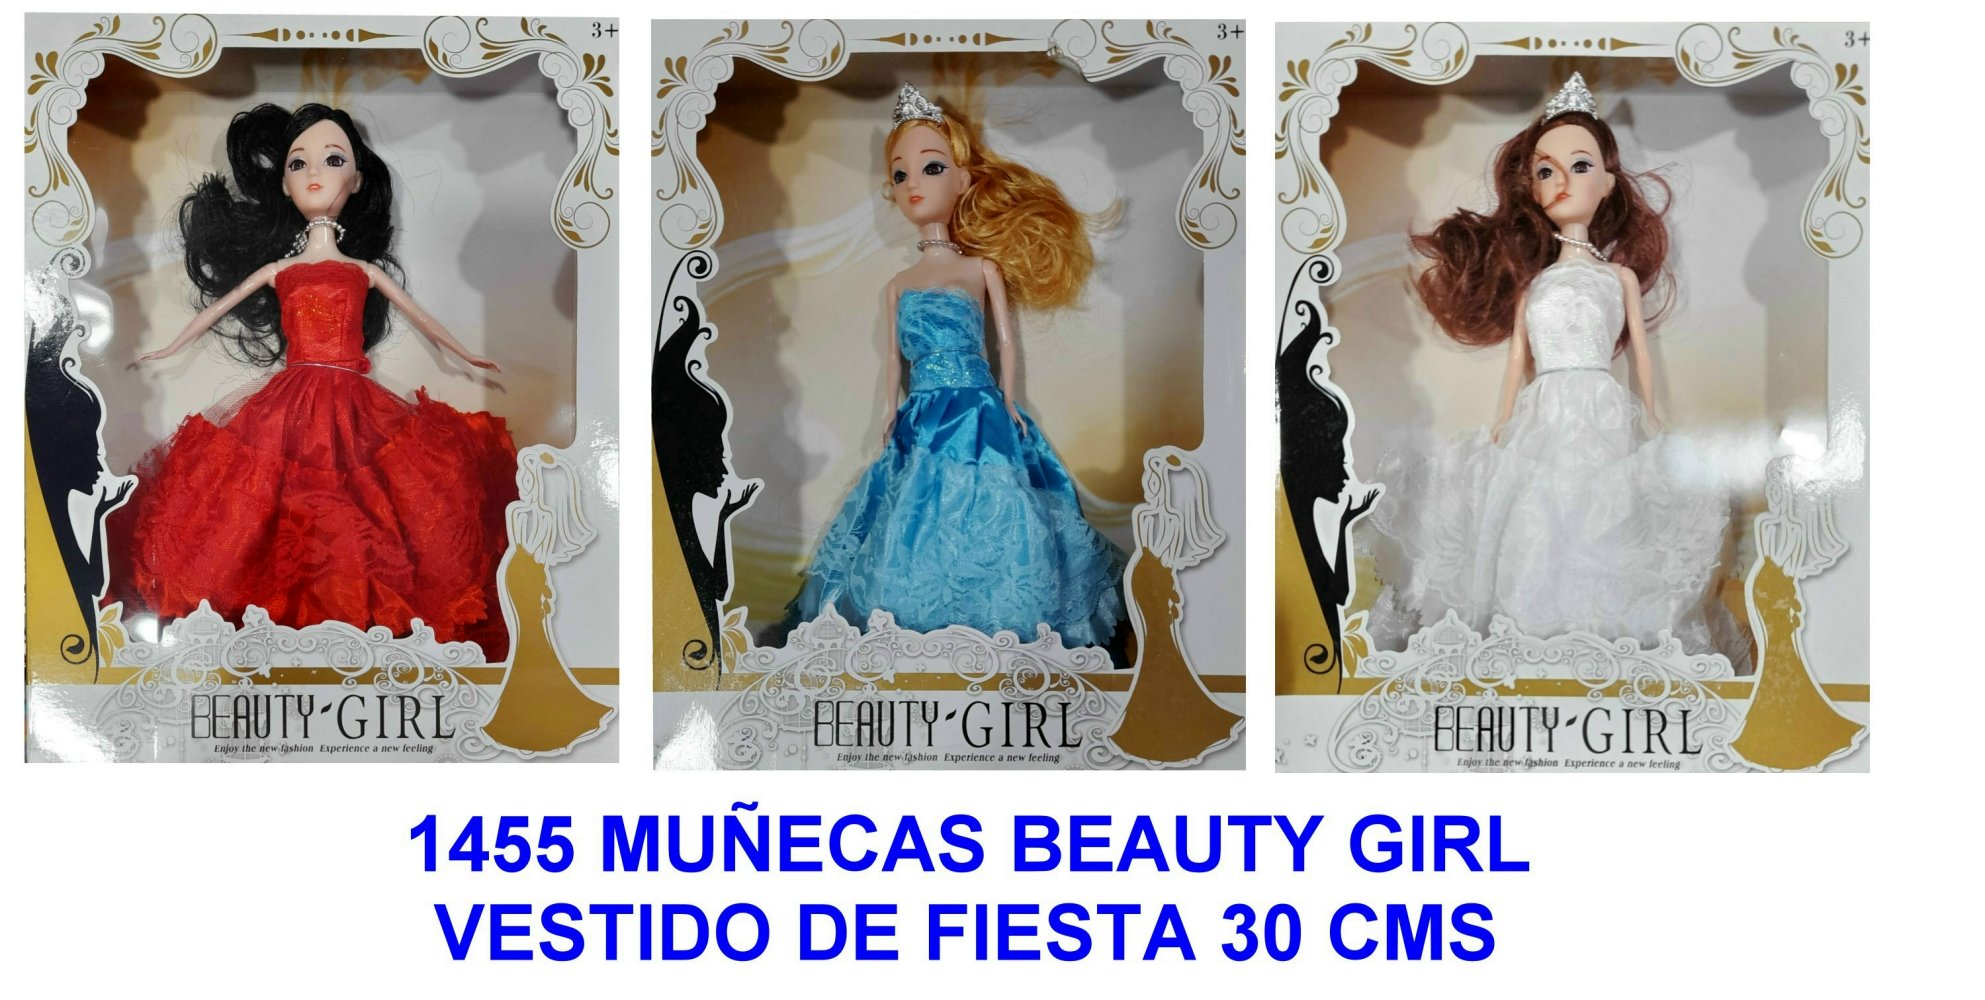 BEAUTY GIRLS 30 CMS VESTIDO DE FIESTA